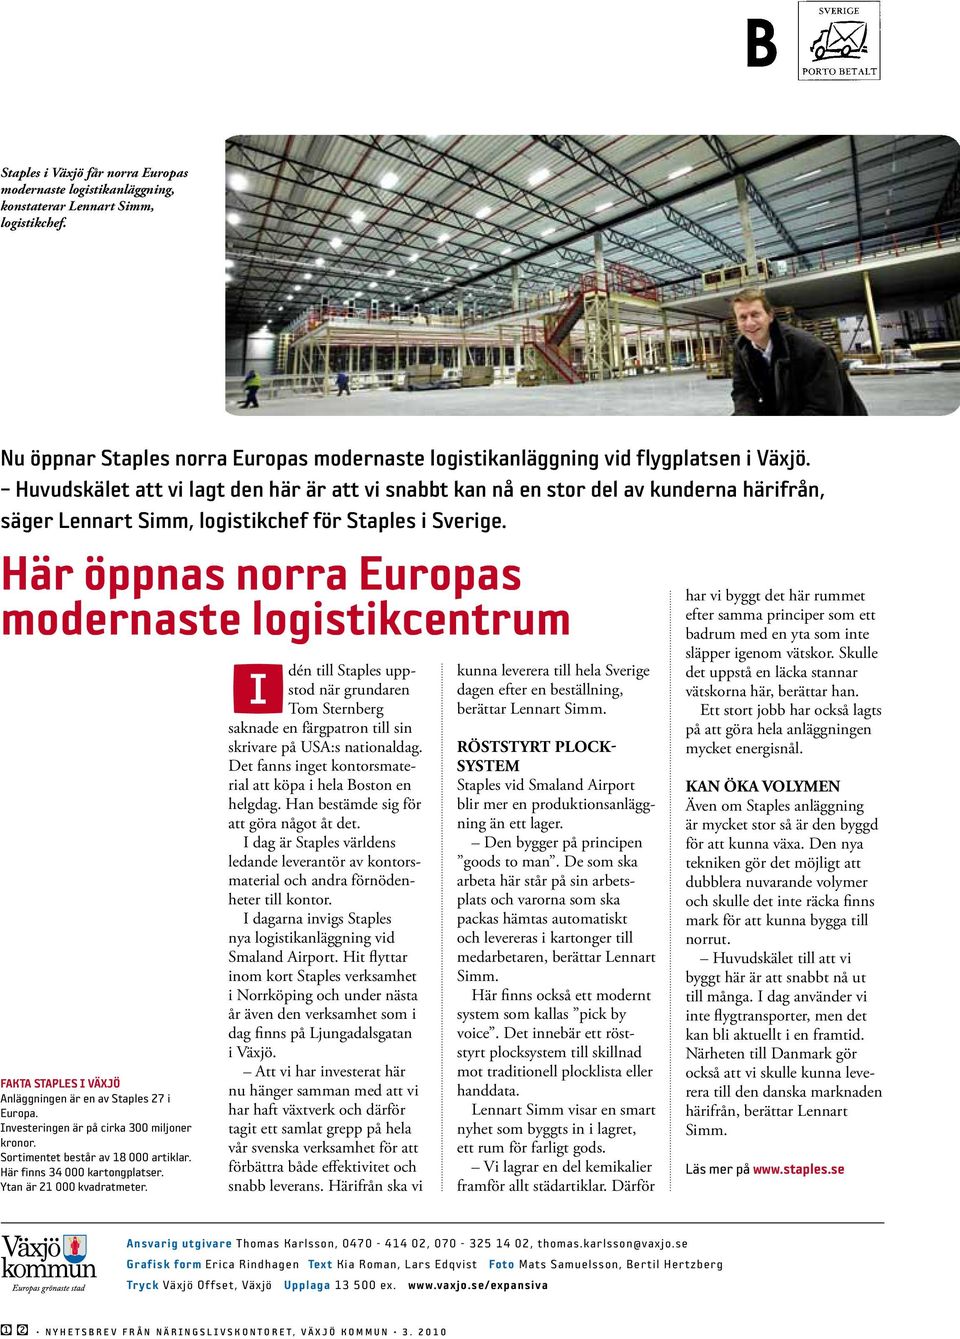 Här öppnas norra Europas modernaste logistikcentrum Fakta staples i växjö Anläggningen är en av Staples 27 i Europa. Investeringen är på cirka 300 miljoner kronor.